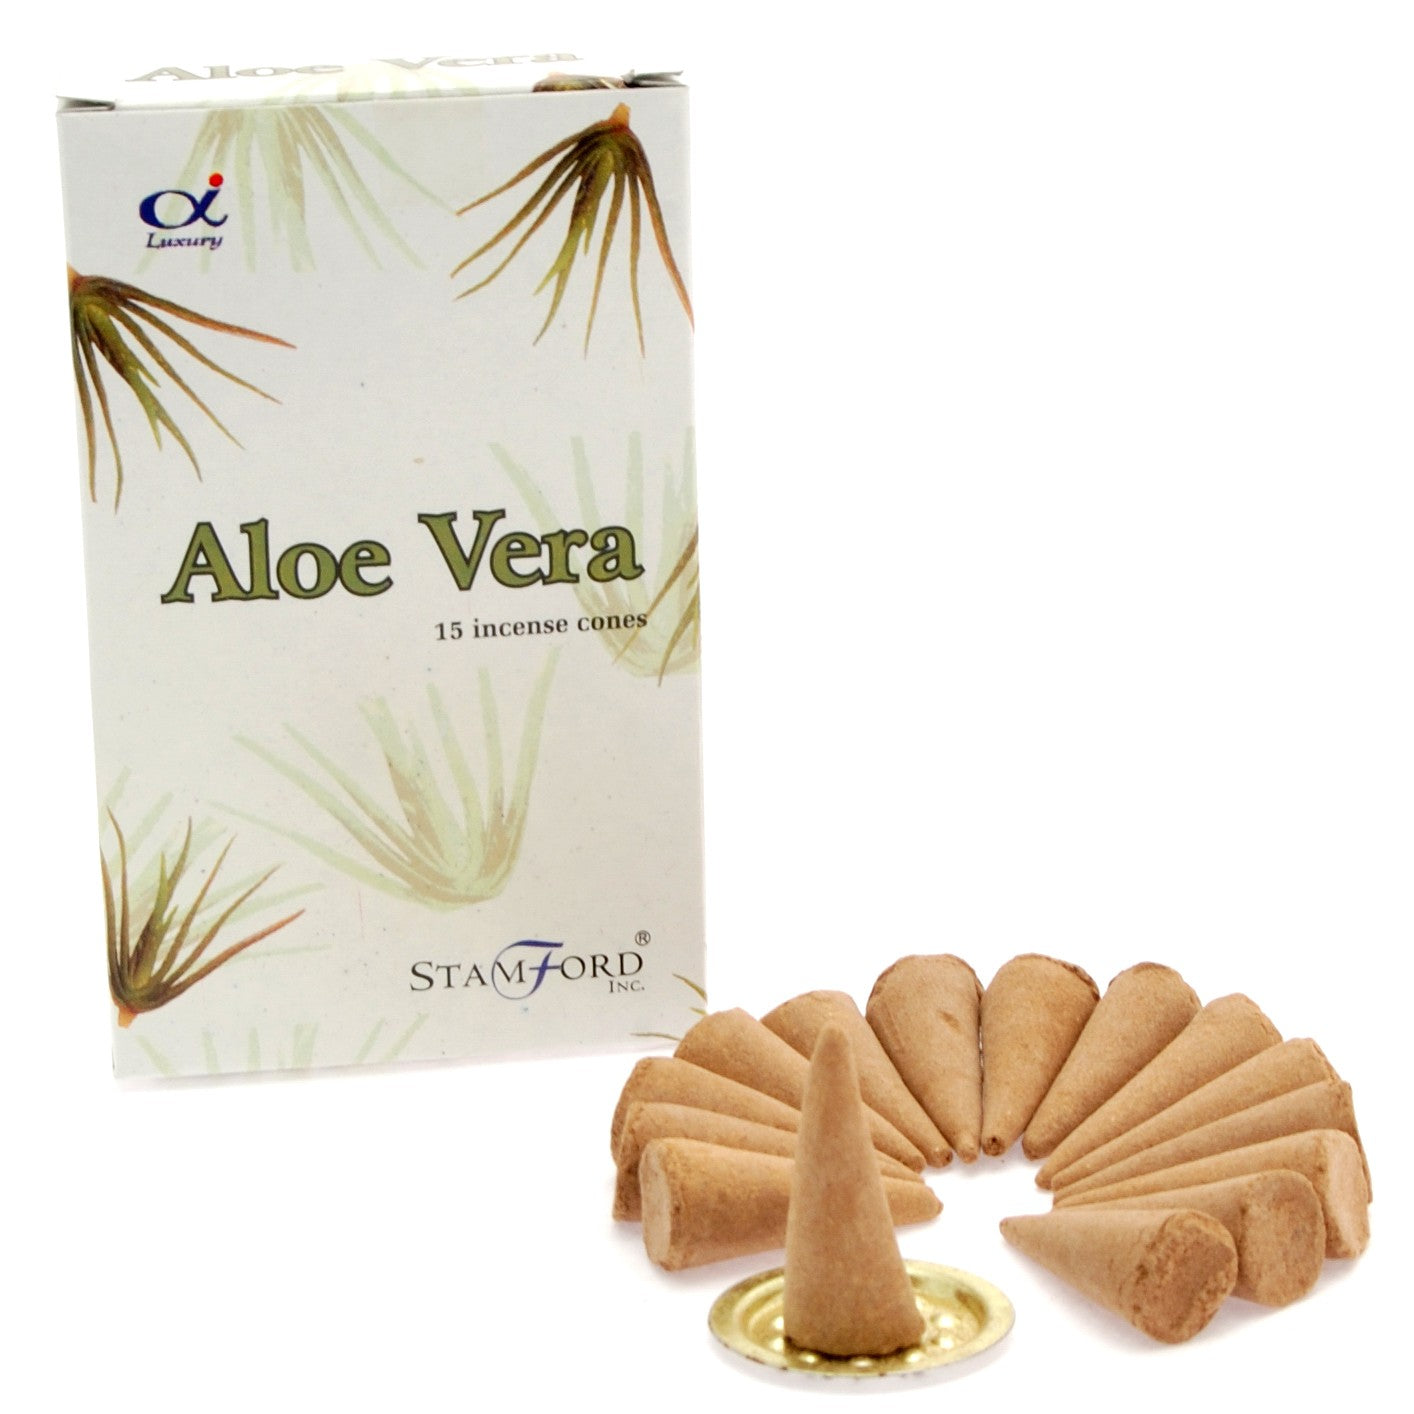 View Aloe Vera Cones information